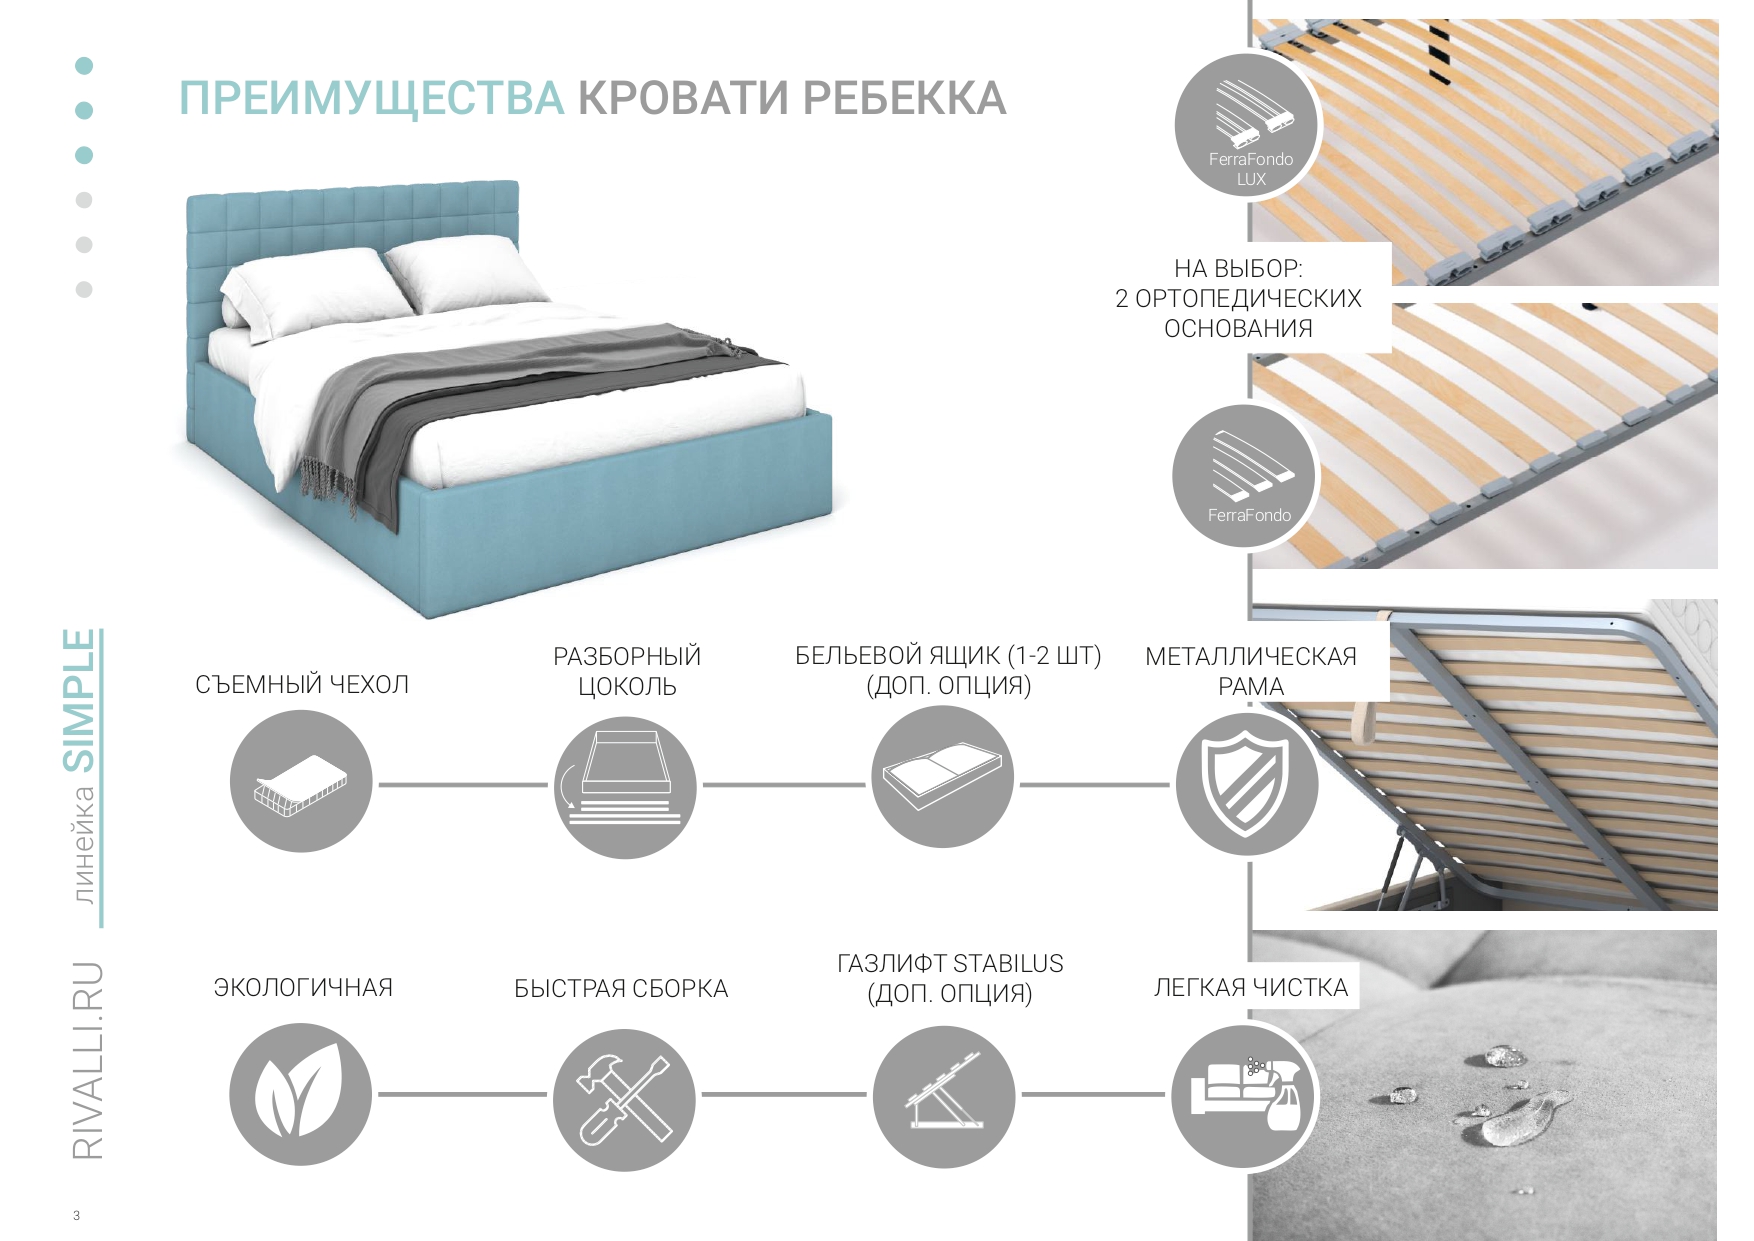 Рейтинг кроватей двуспальных с подъемным механизмом по качеству производителей